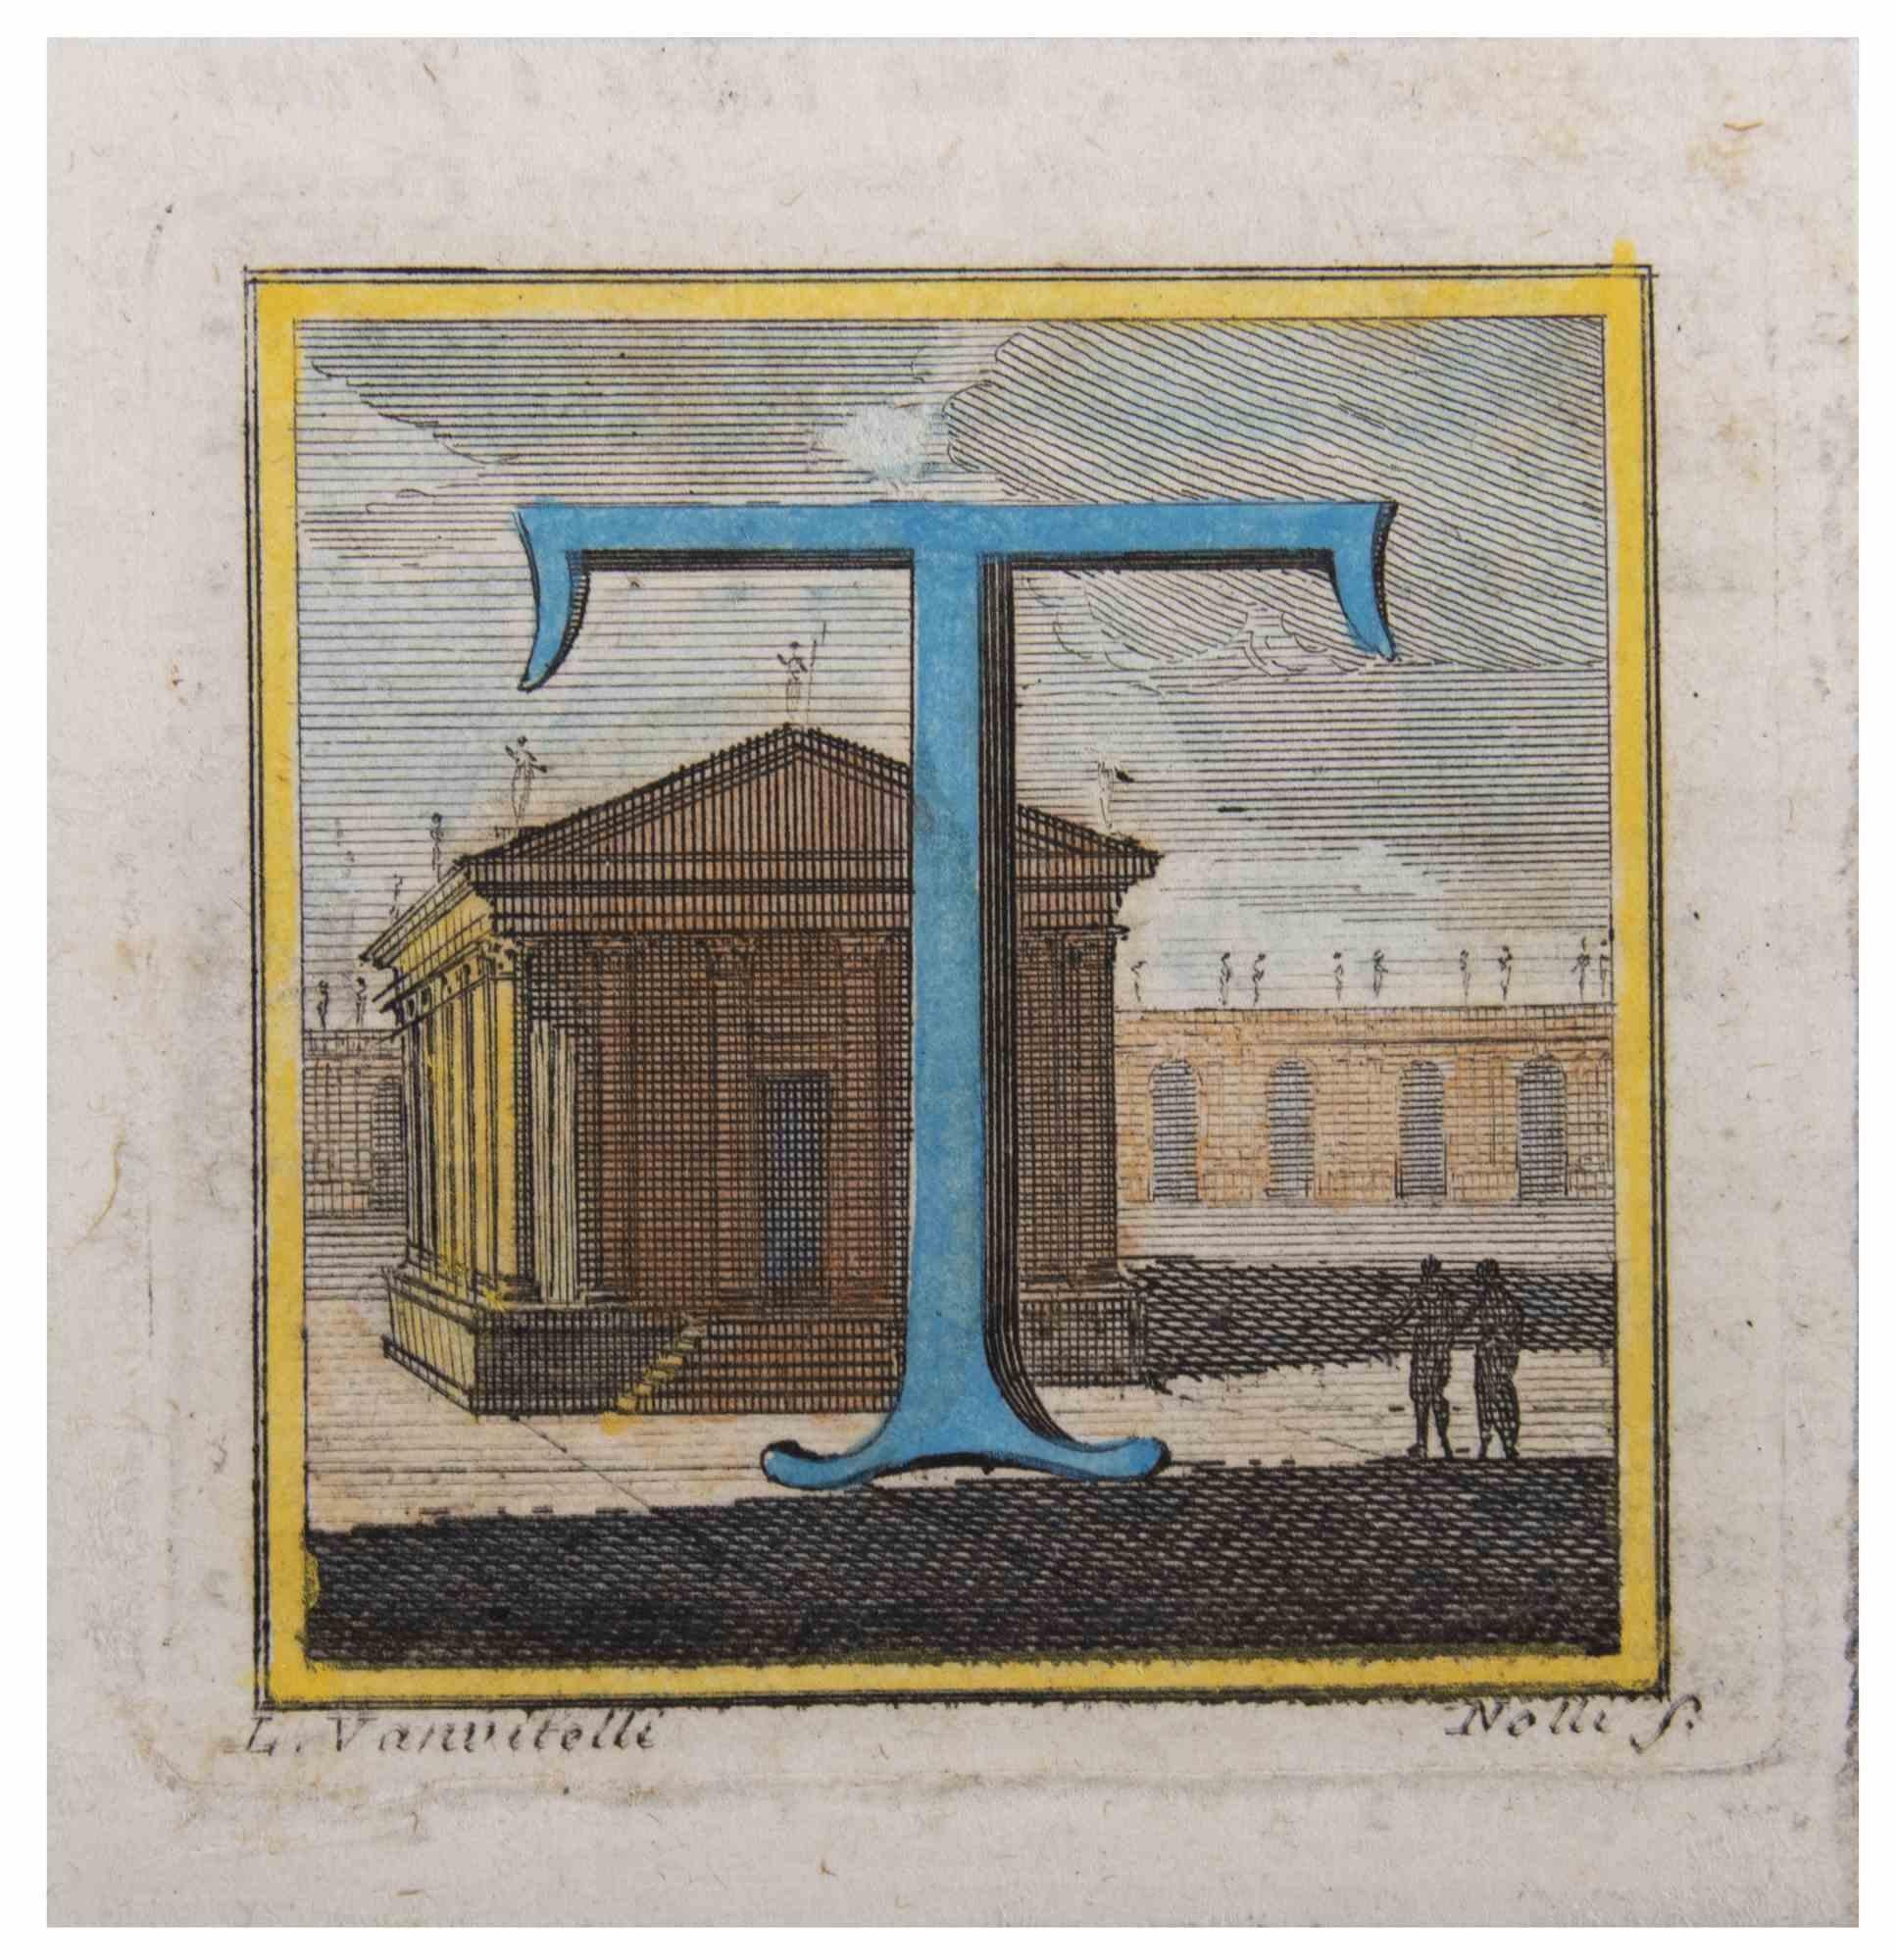 Der Buchstabe T ist eine Radierung des Künstlers Luigi Vanvitelli aus dem 18. Jahrhundert.

Guter Zustand.   

Die Radierung gehört zu der Druckserie "Antiquities of Herculaneum Exposed" (Originaltitel: "Le Antichità di Ercolano Esposte"), einem